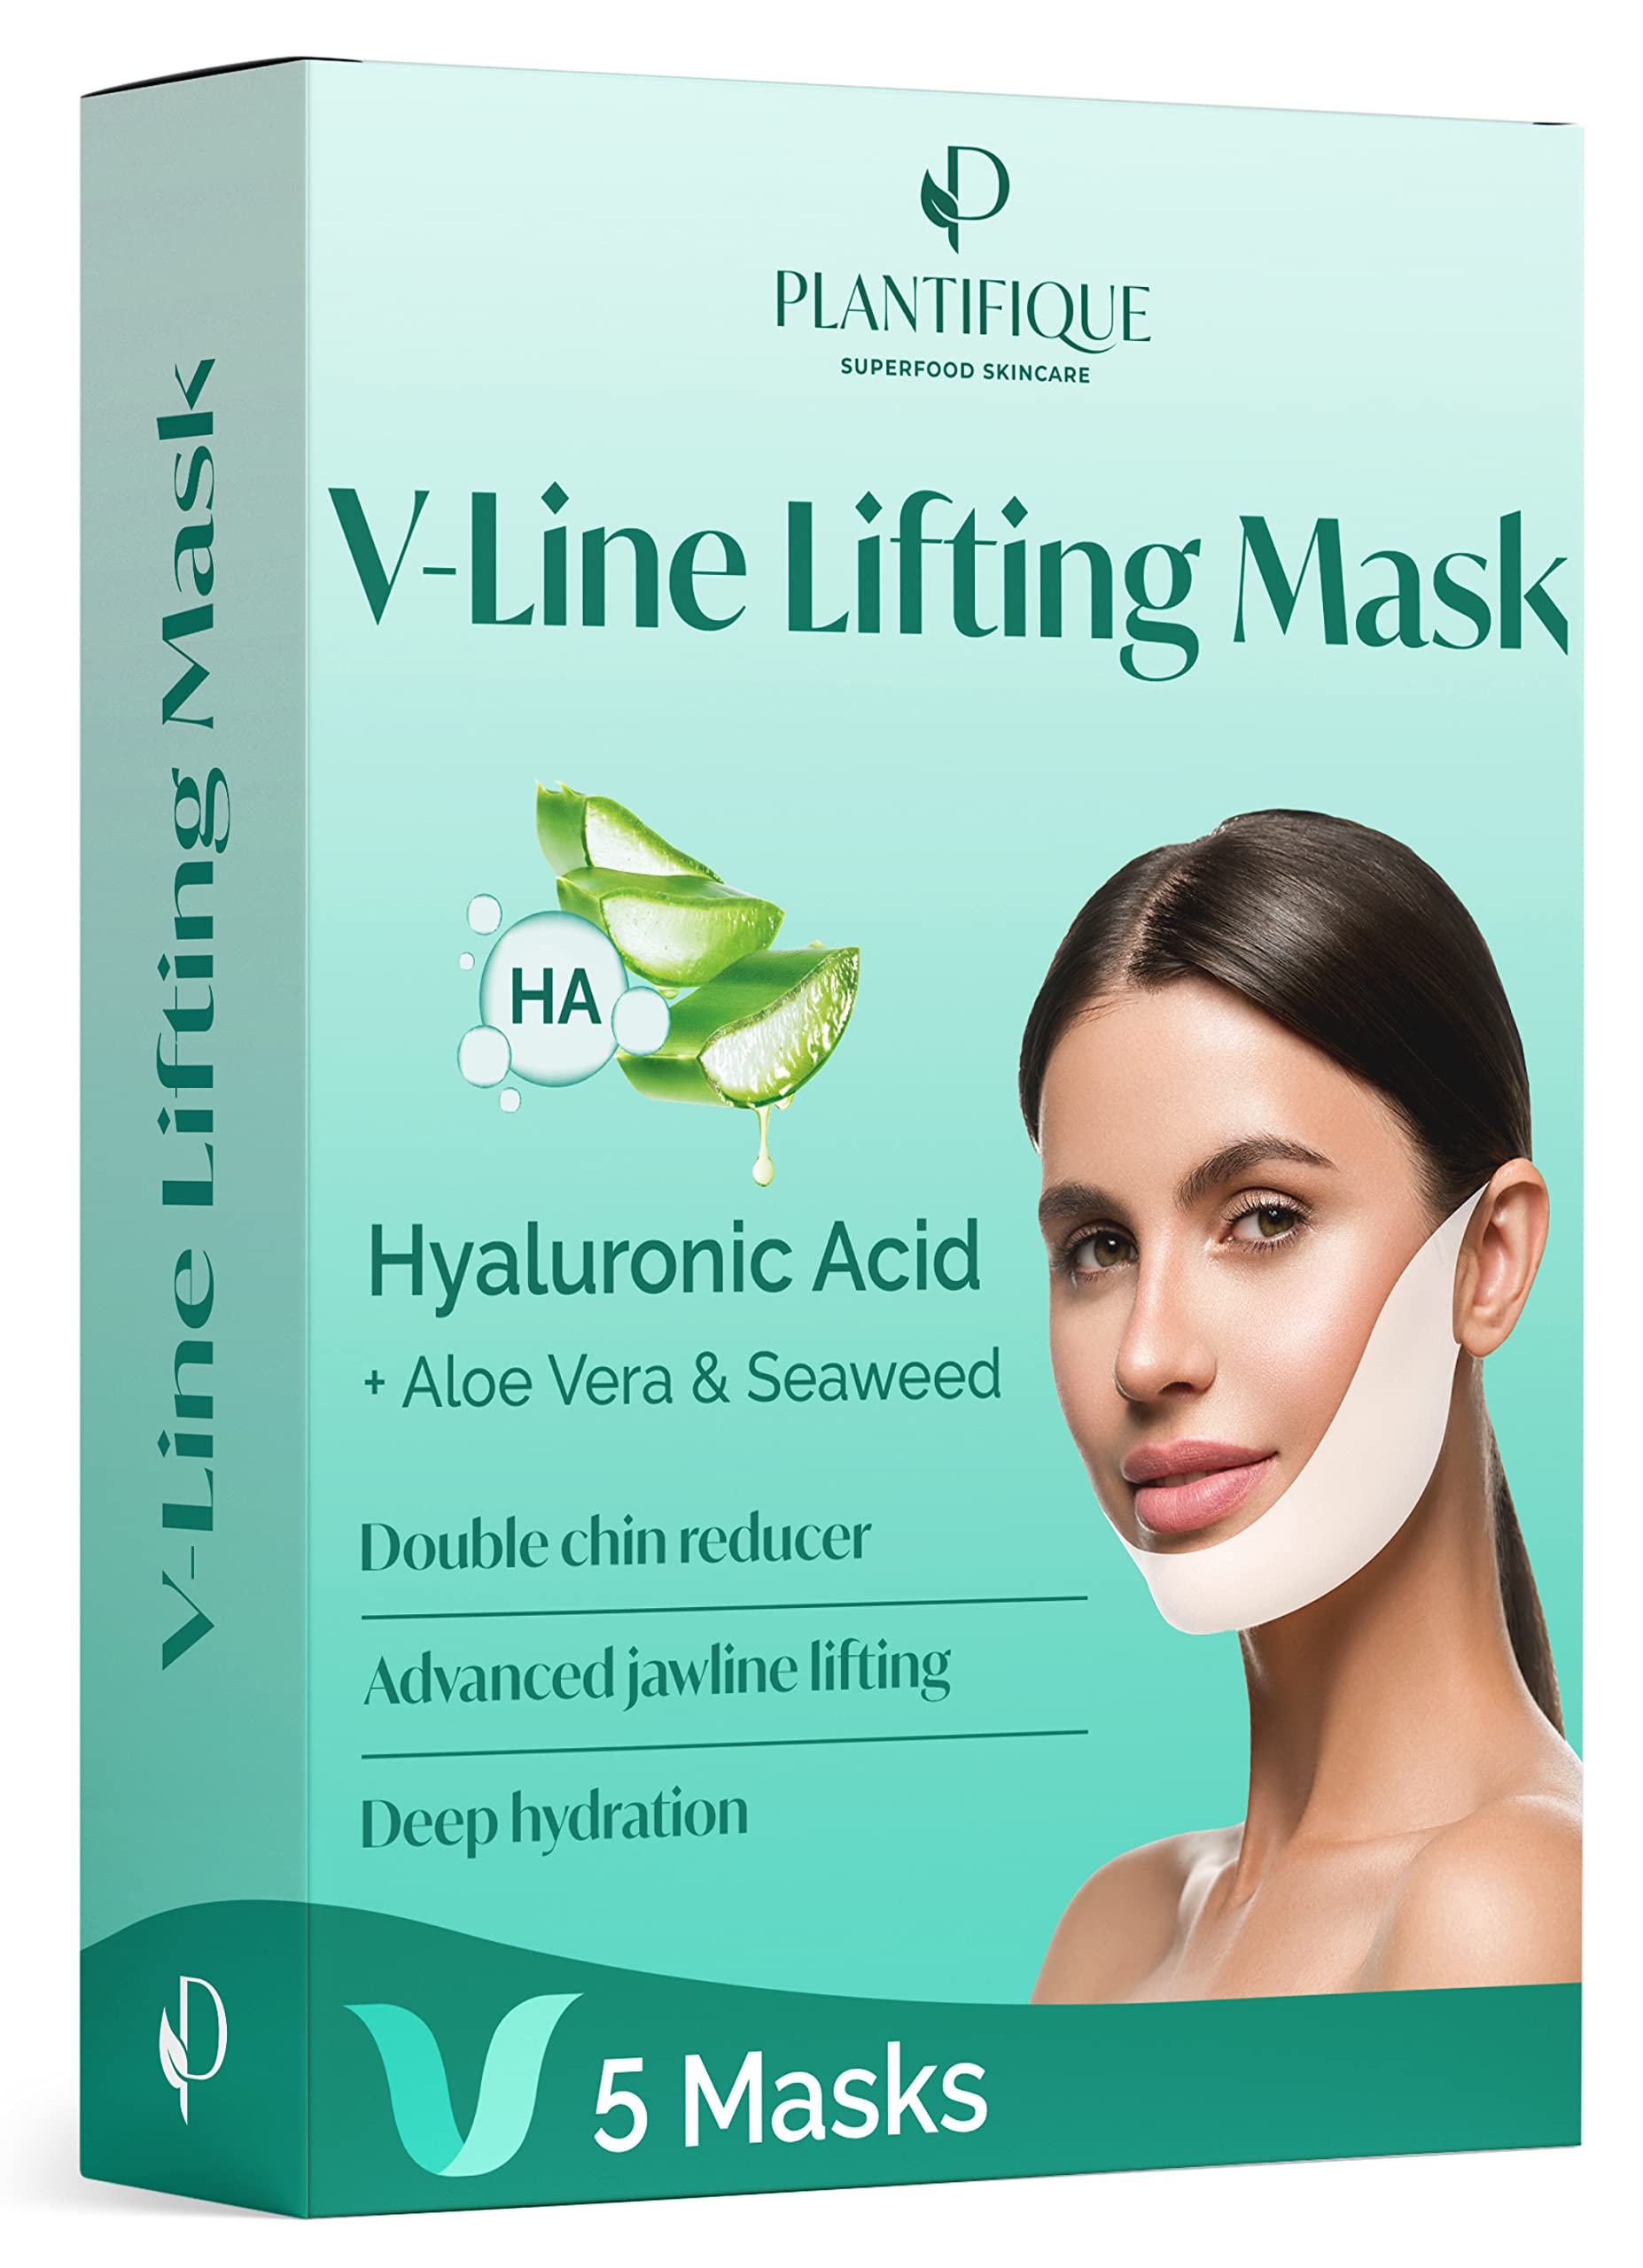 PLANTIFIQUE V-Line Lifting Face Mask - 5 PCS V Shape Face Lift